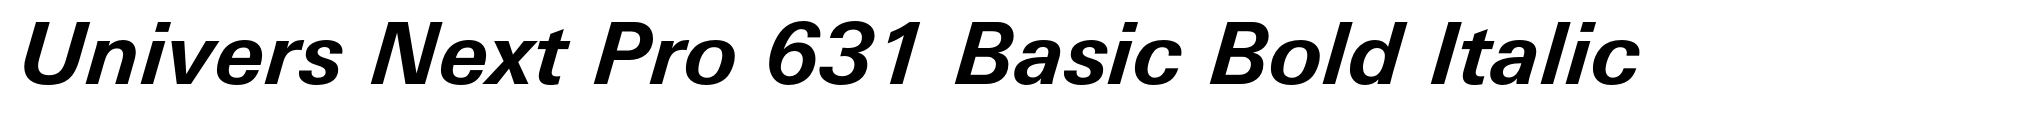 Univers Next Pro 631 Basic Bold Italic image